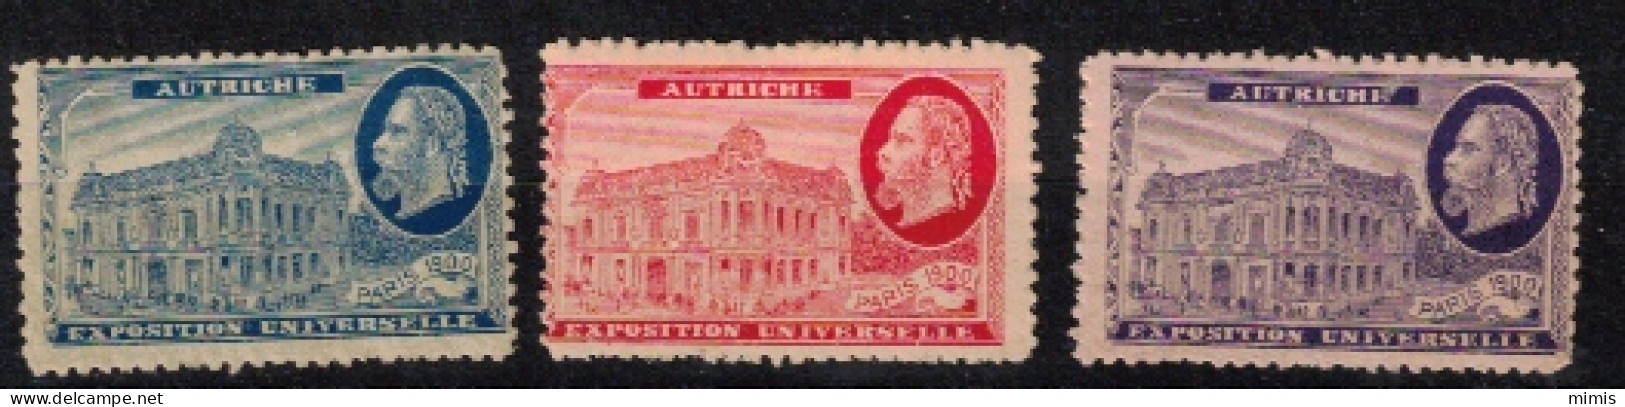 FRANCE     VIGNETTES      Exposition Universelle Paris 1900     Autriche - Turismo (Viñetas)